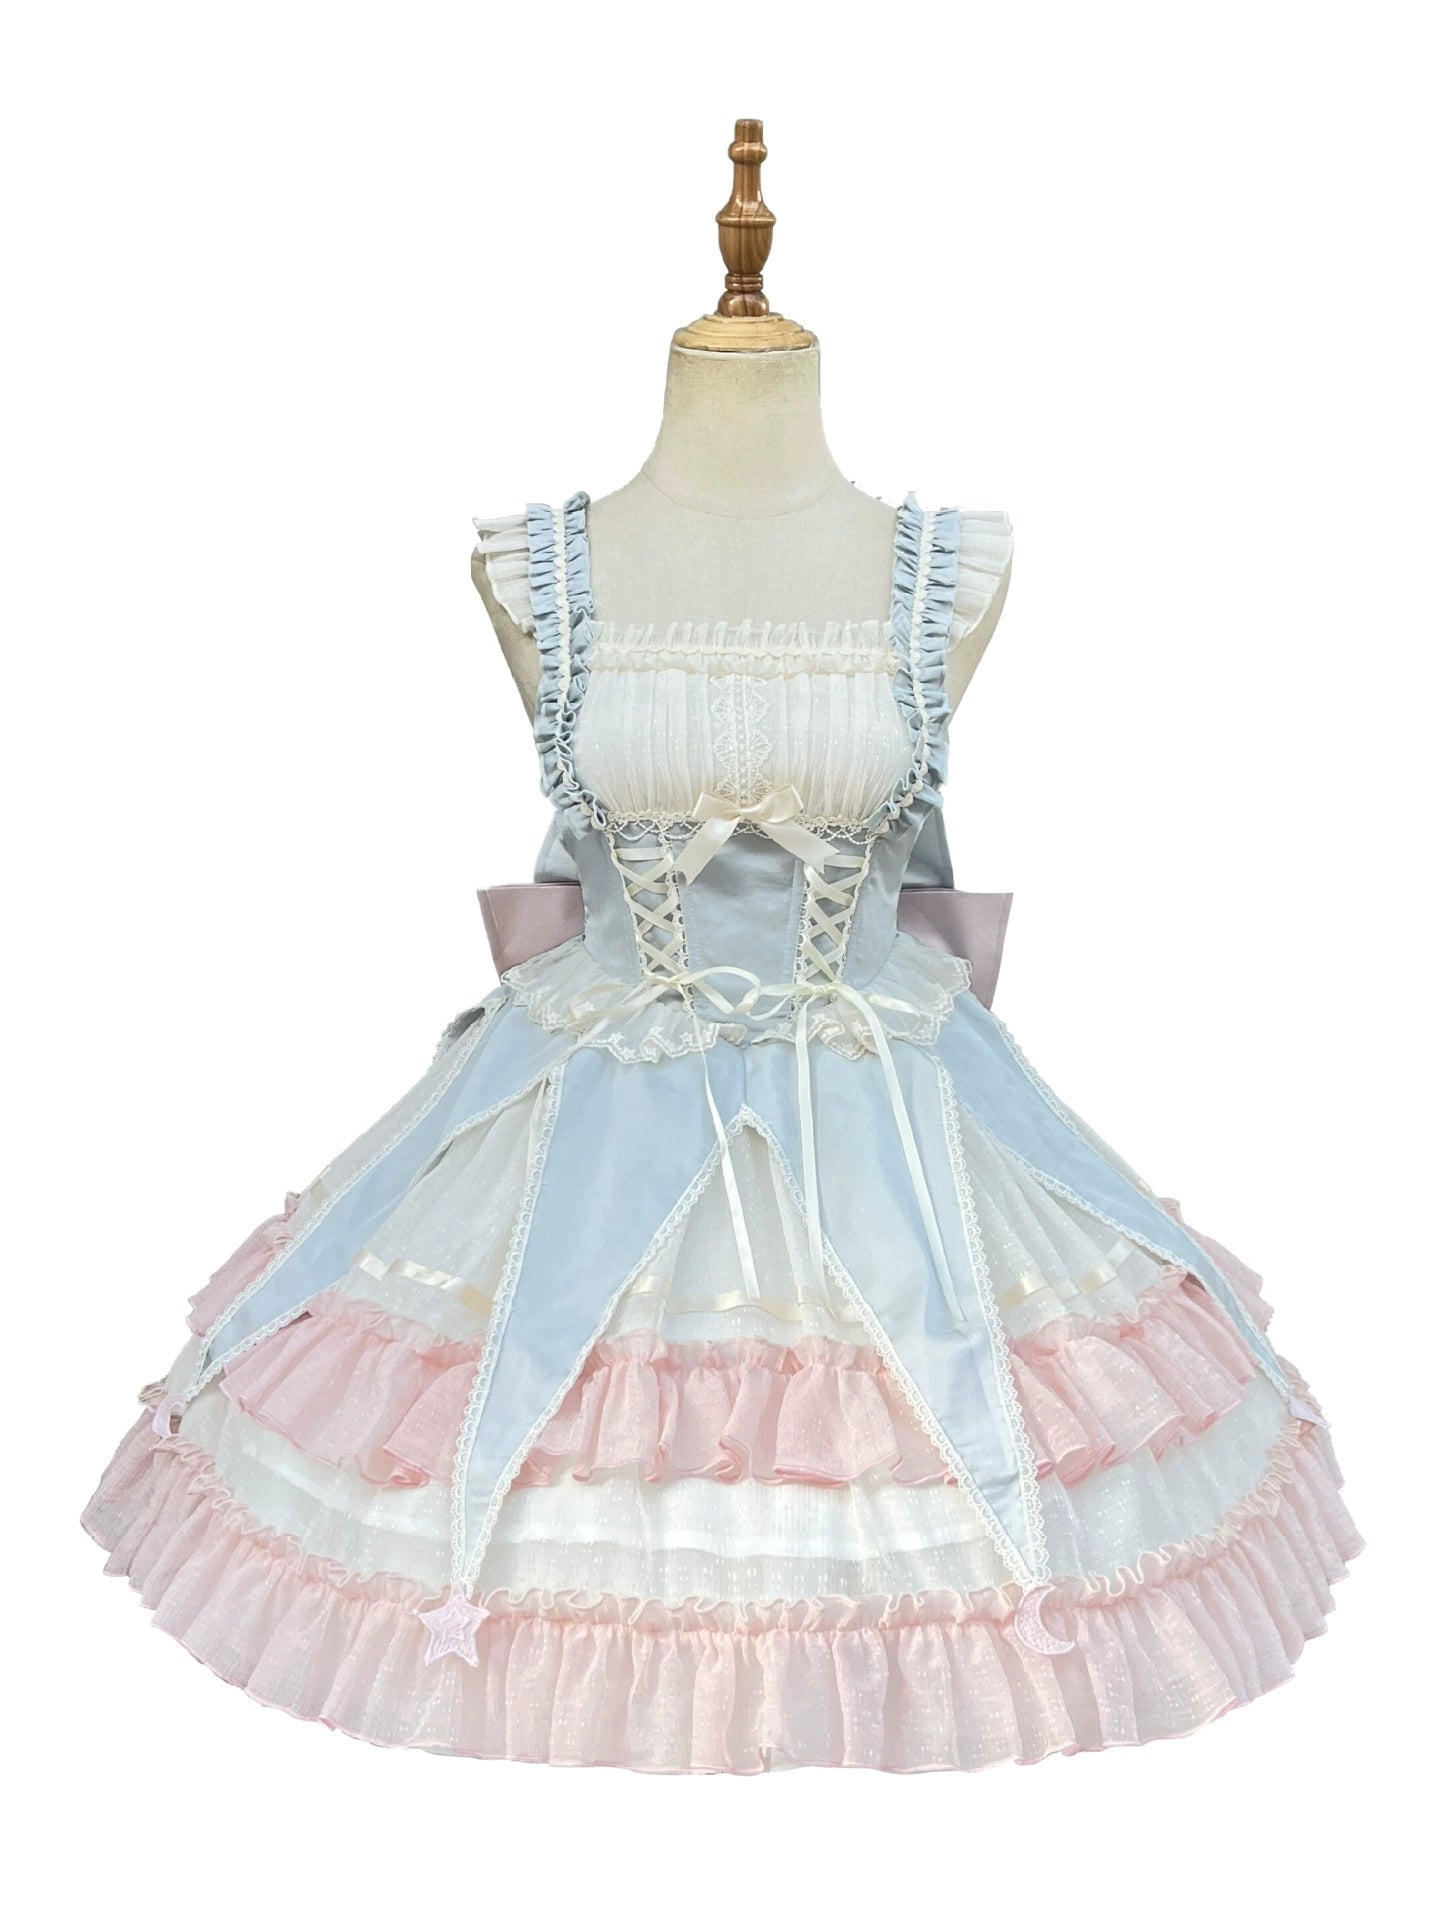 Original Lolita princesse robe tous les jours jsk doux mignon fleur mariage ballet cirque robe lolita été